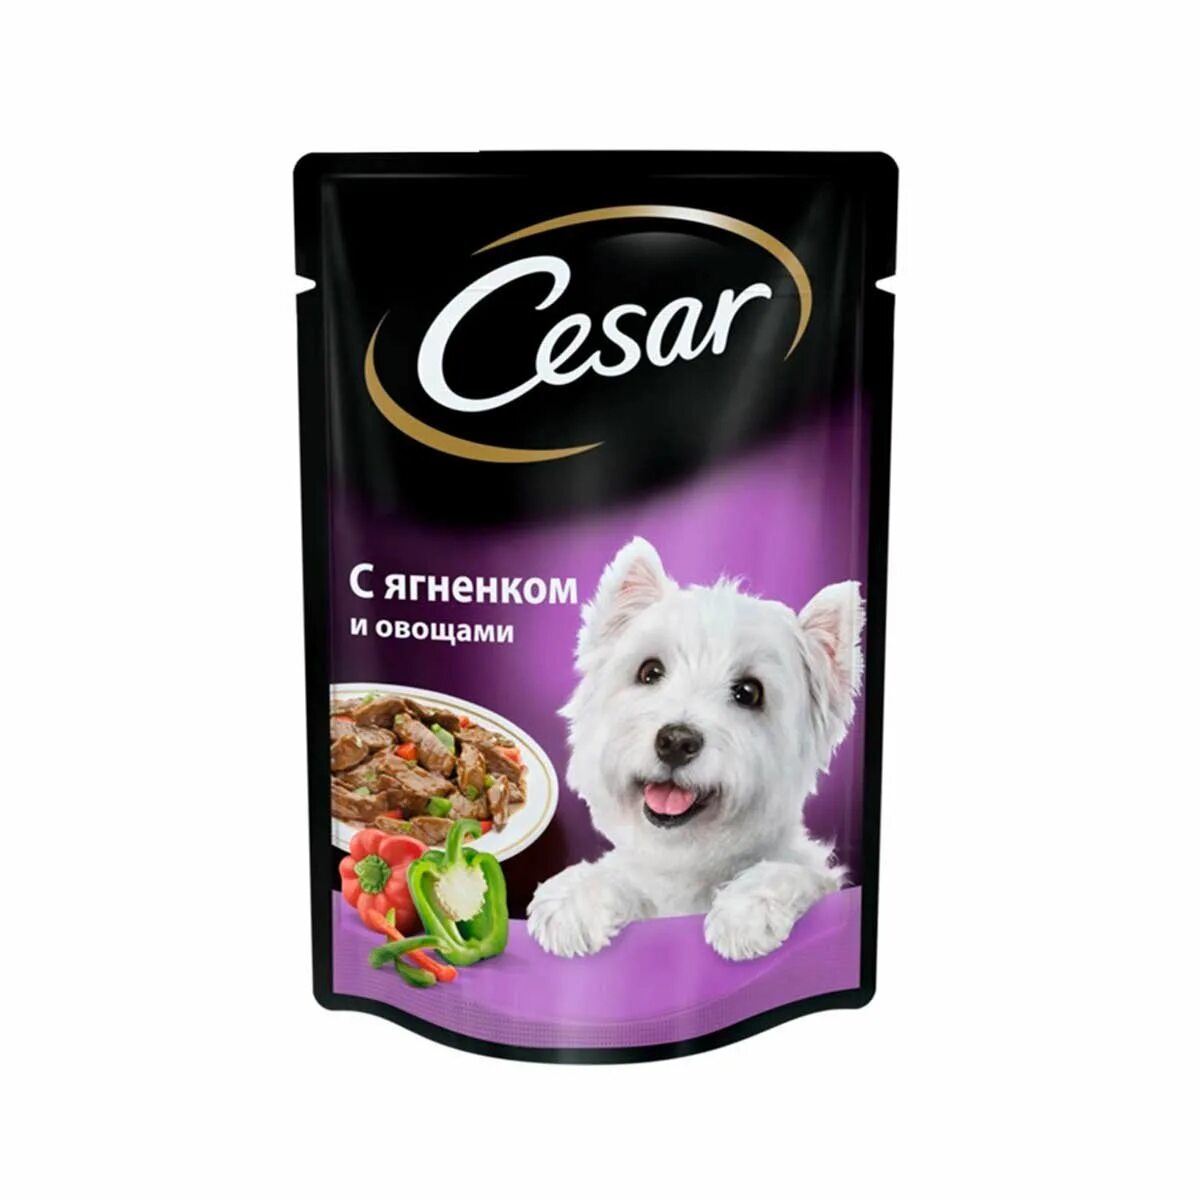 Влажный корм для собак Cesar. Сезар корм влажный для собак. Cesar д/с жаркое с уткой м/п 85г/28. Cesar для собак 85г.